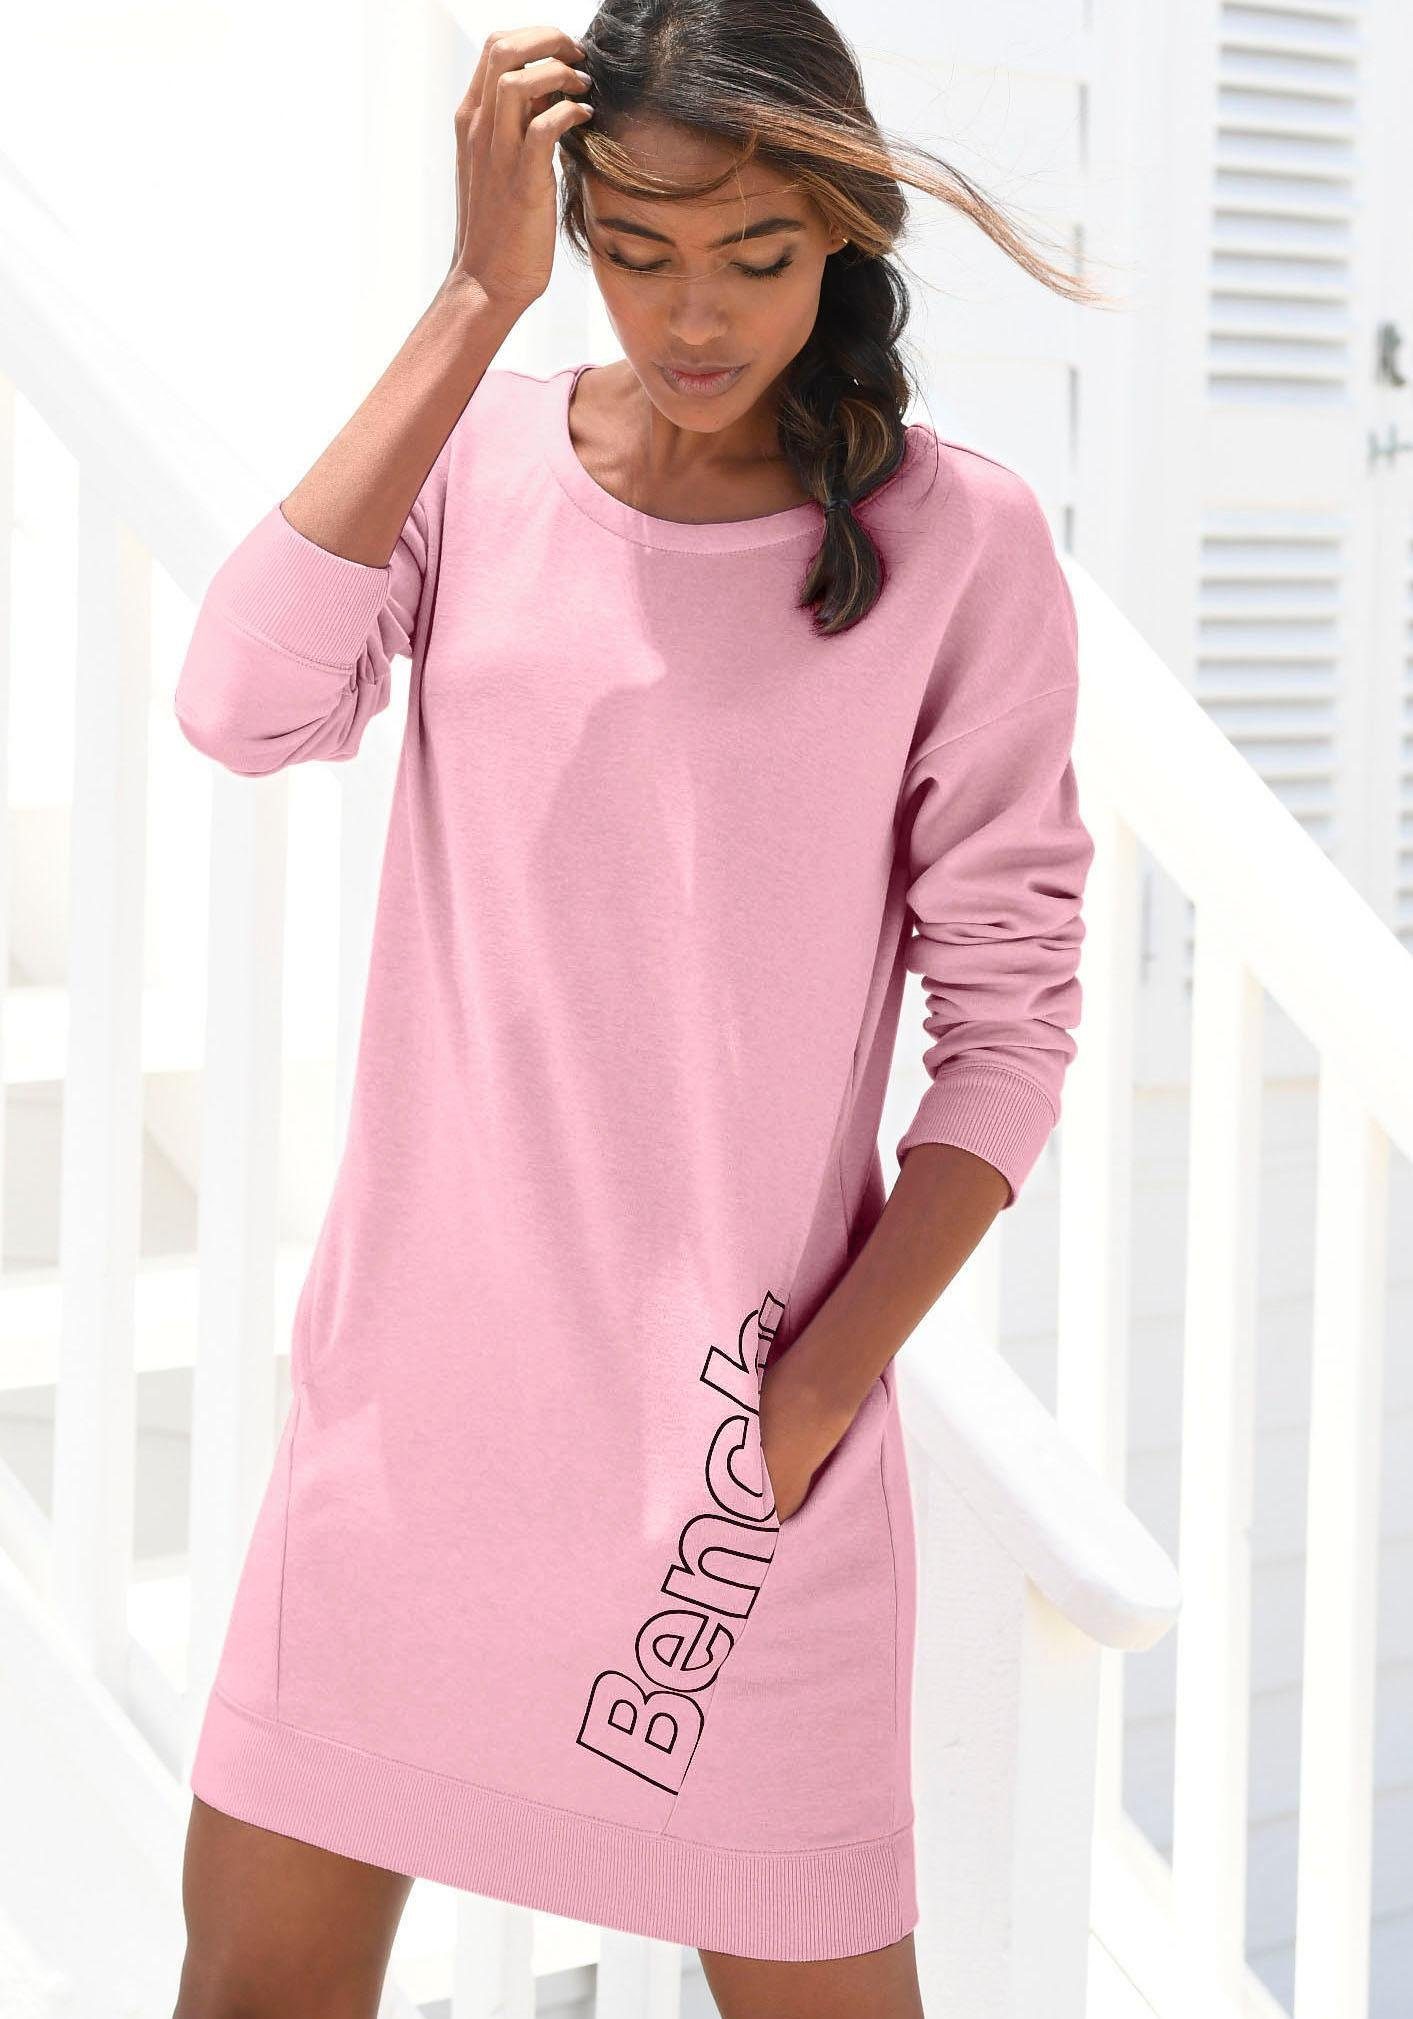 Rosa Kleid online kaufen » Kleider in pink | OTTO